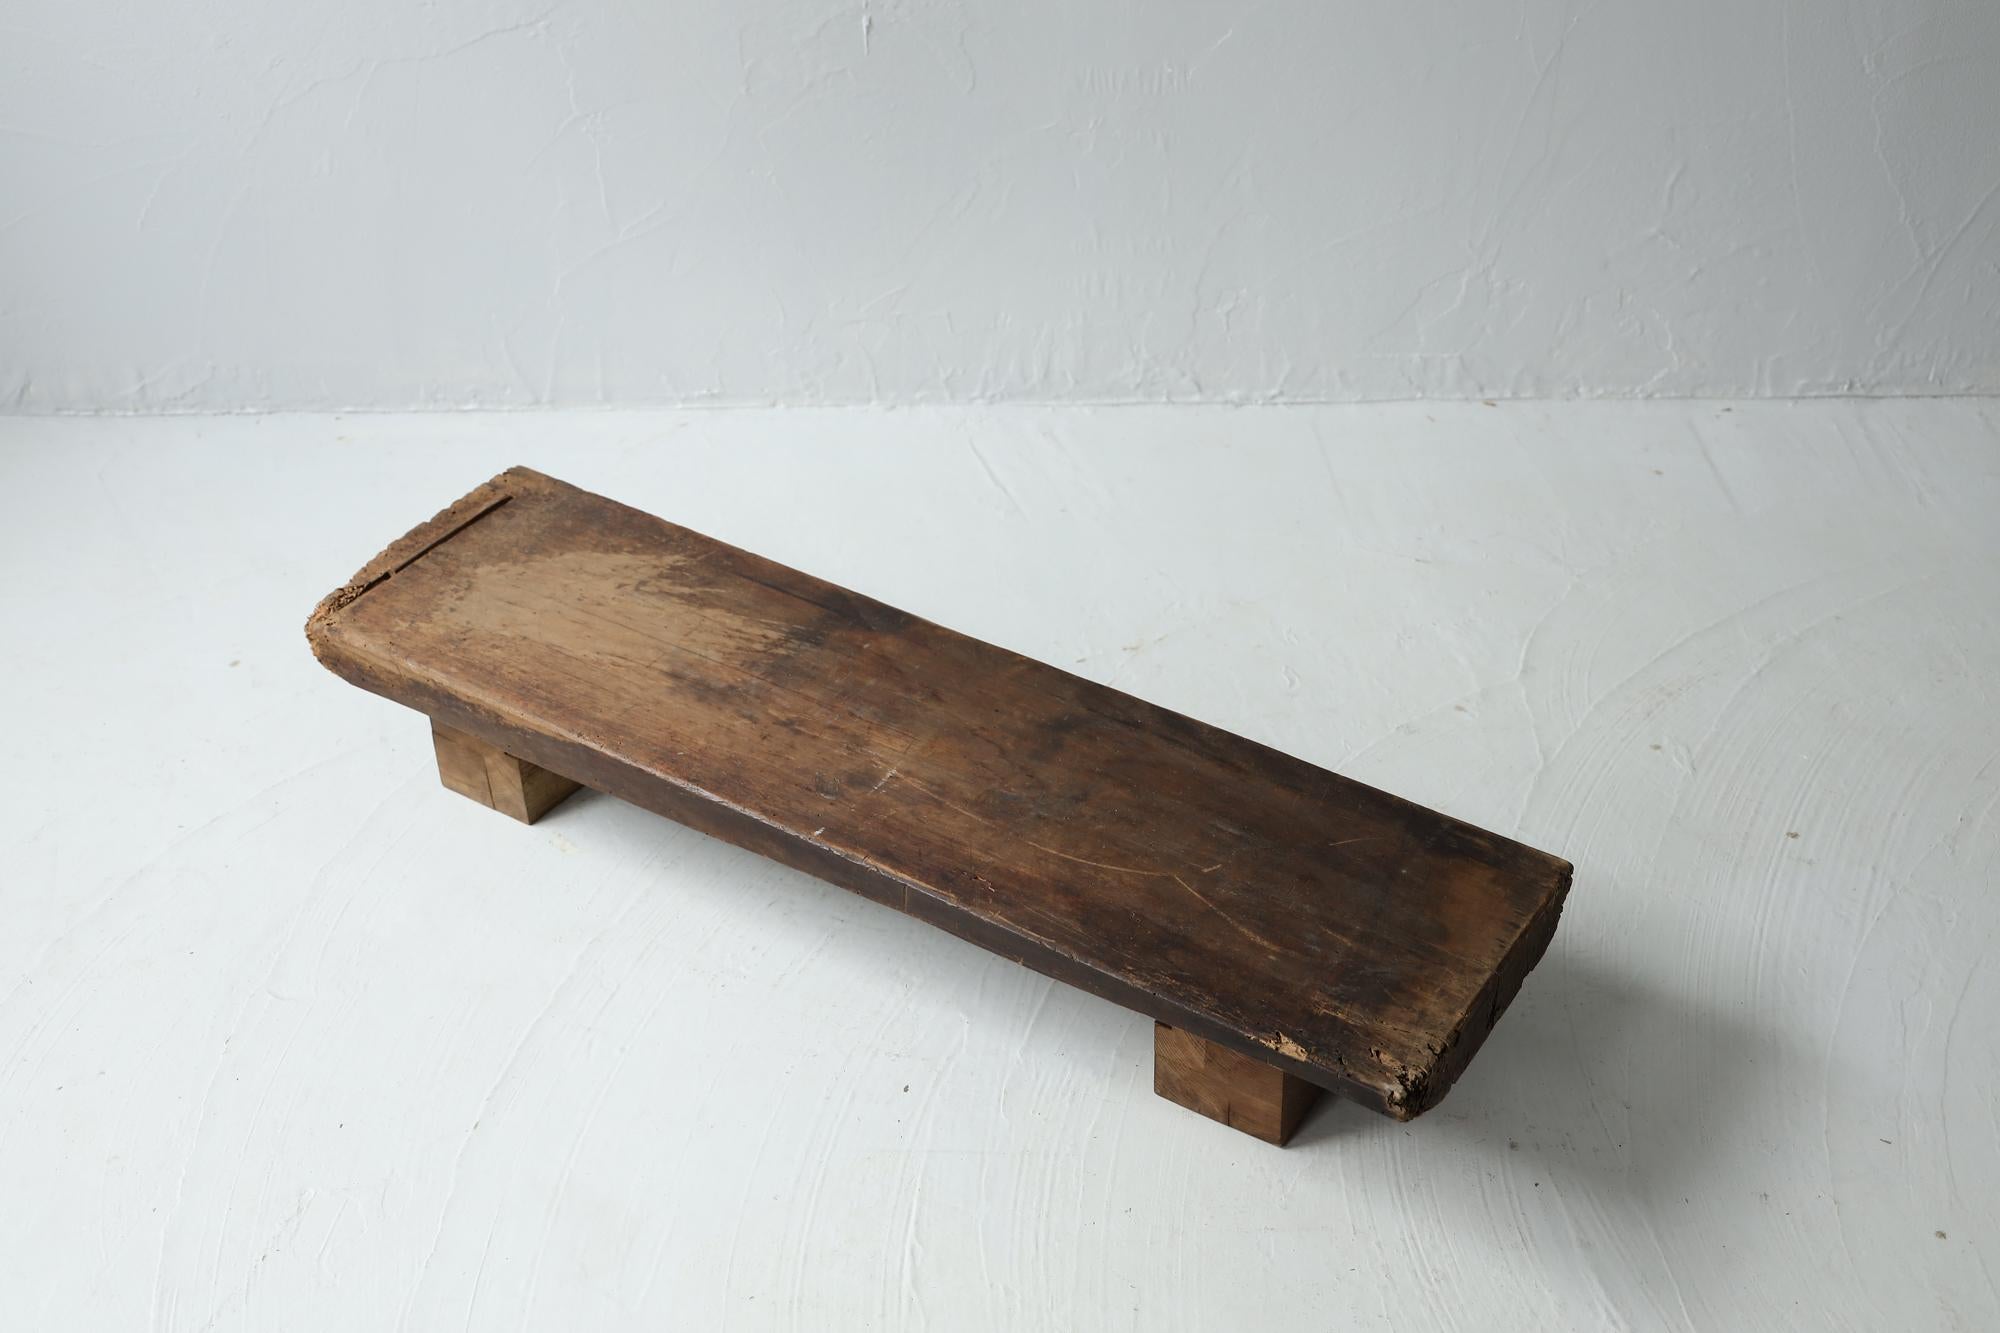 Dies ist ein antiker, niedriger Holztisch aus der Meiji-Ära.
Damals wurde er als Arbeitstisch für Holzarbeiter verwendet.

Er ist aus hochwertigem japanischem Zelkova-Holz gefertigt.
Die Maserung des Zelkova-Holzes ist sehr schön.

Es hat einen